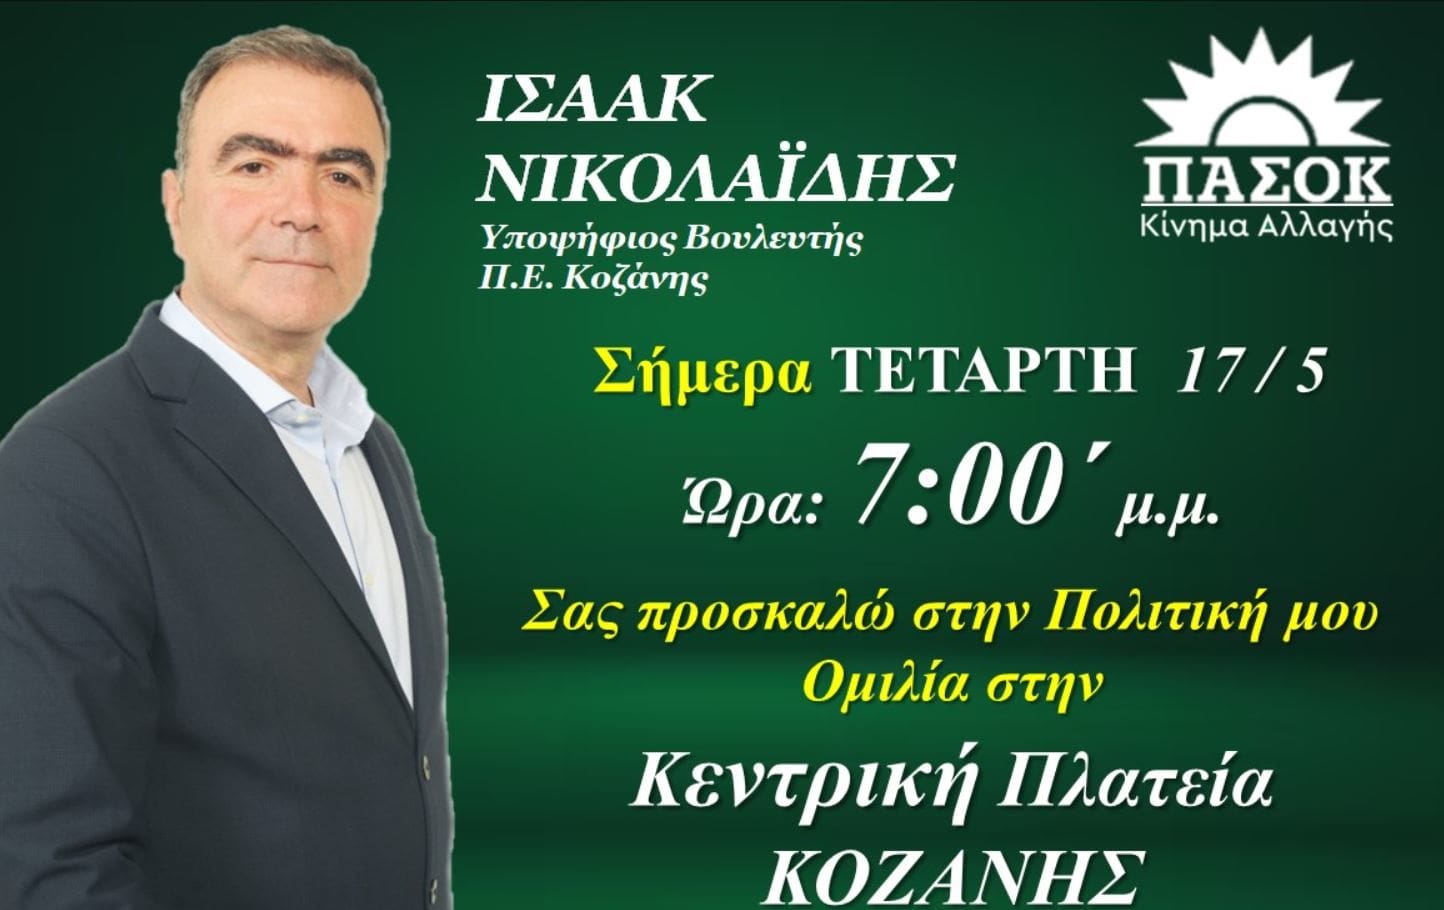 Σήμερα Τετάρτη 17/5/ η κεντρική ομιλία του υπ βουλευτή Ισαάκ Νικολαΐδη στην Κοζάνη